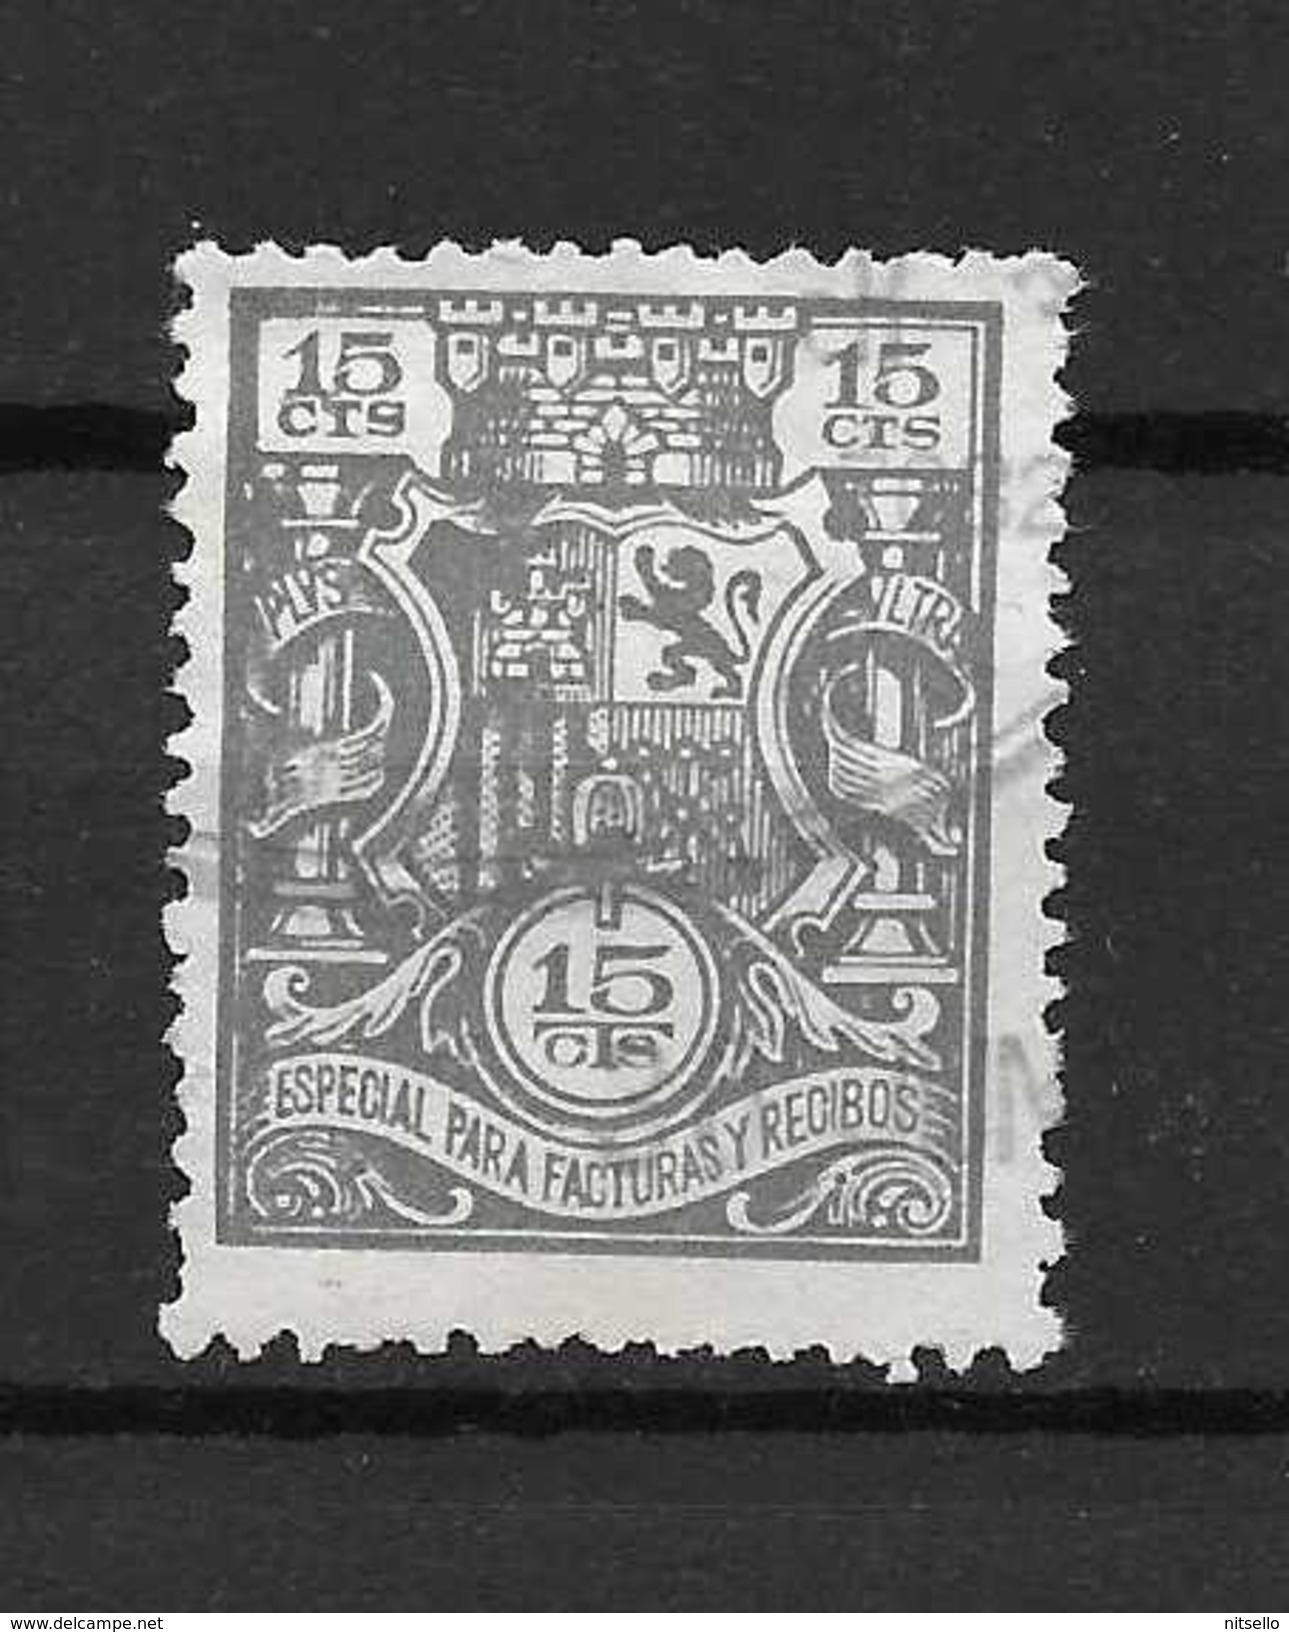 LOTE 1891 B   ///  ESPAÑA  FISCALES -   ESPECIAL PARA FACTURAS Y RECIBOS - Revenue Stamps